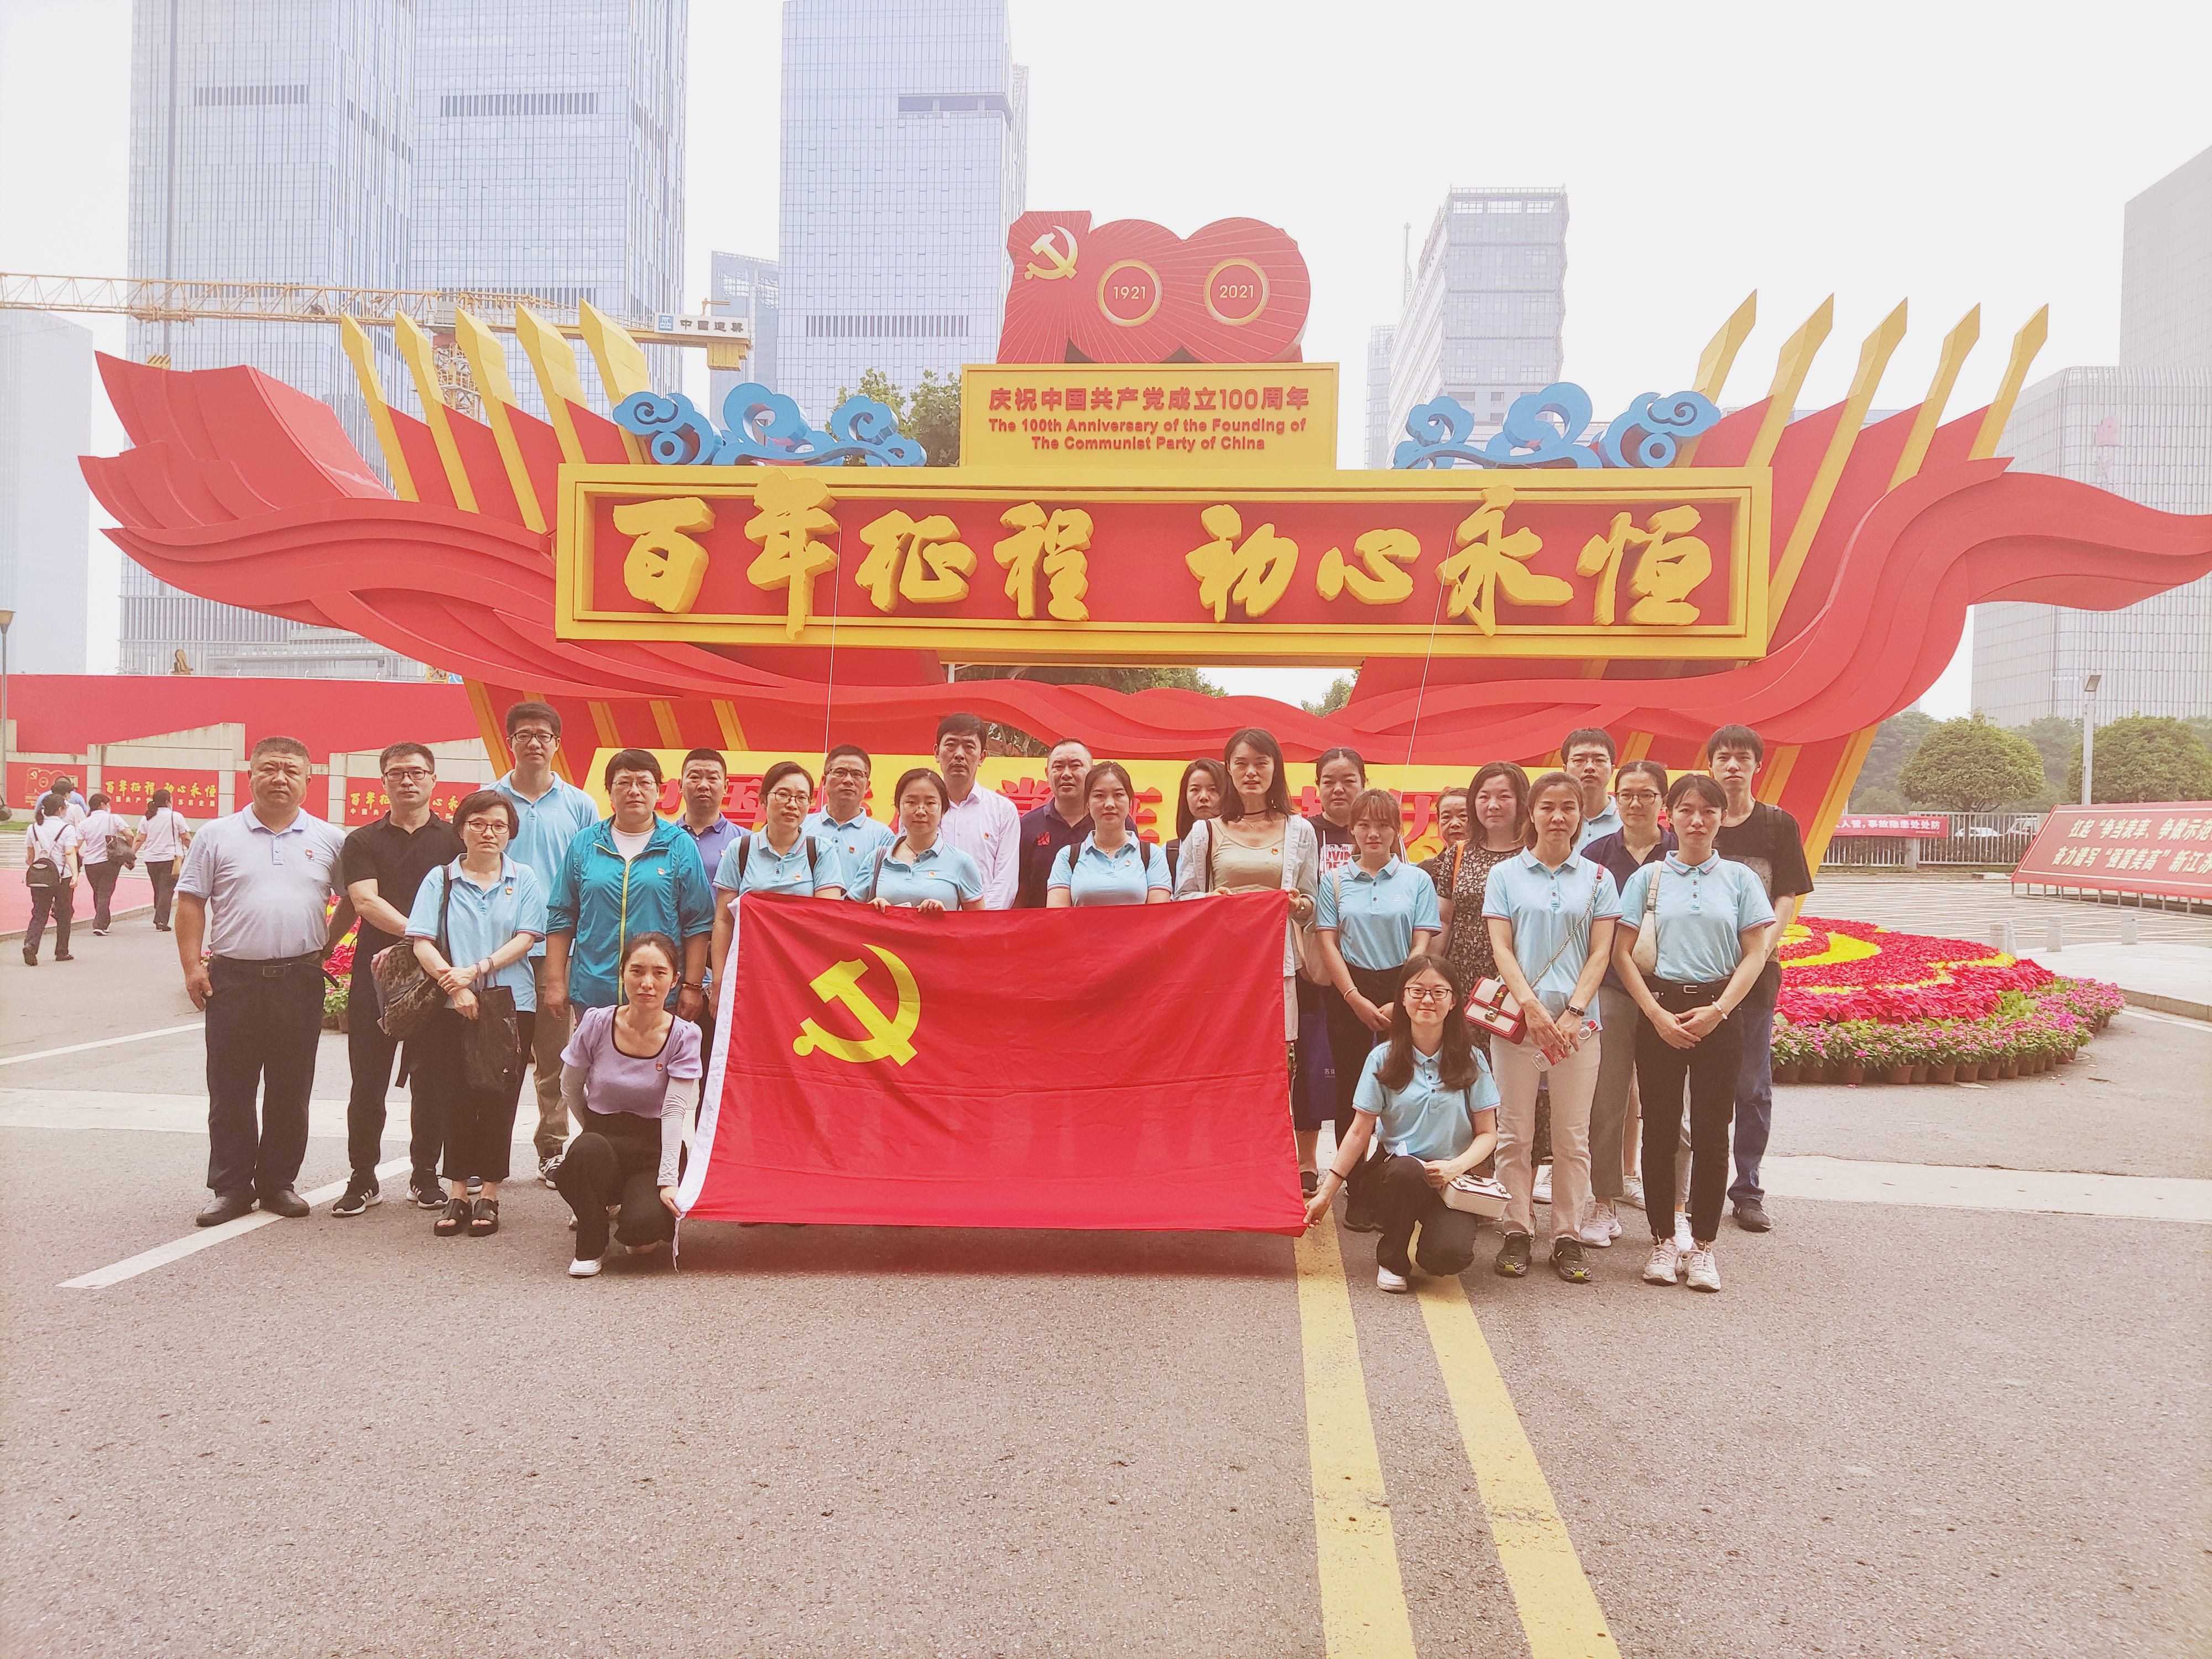 星空体育(中国)官方网站组织参观“百年征程 初心永恒——中国共产党在江苏历史展”